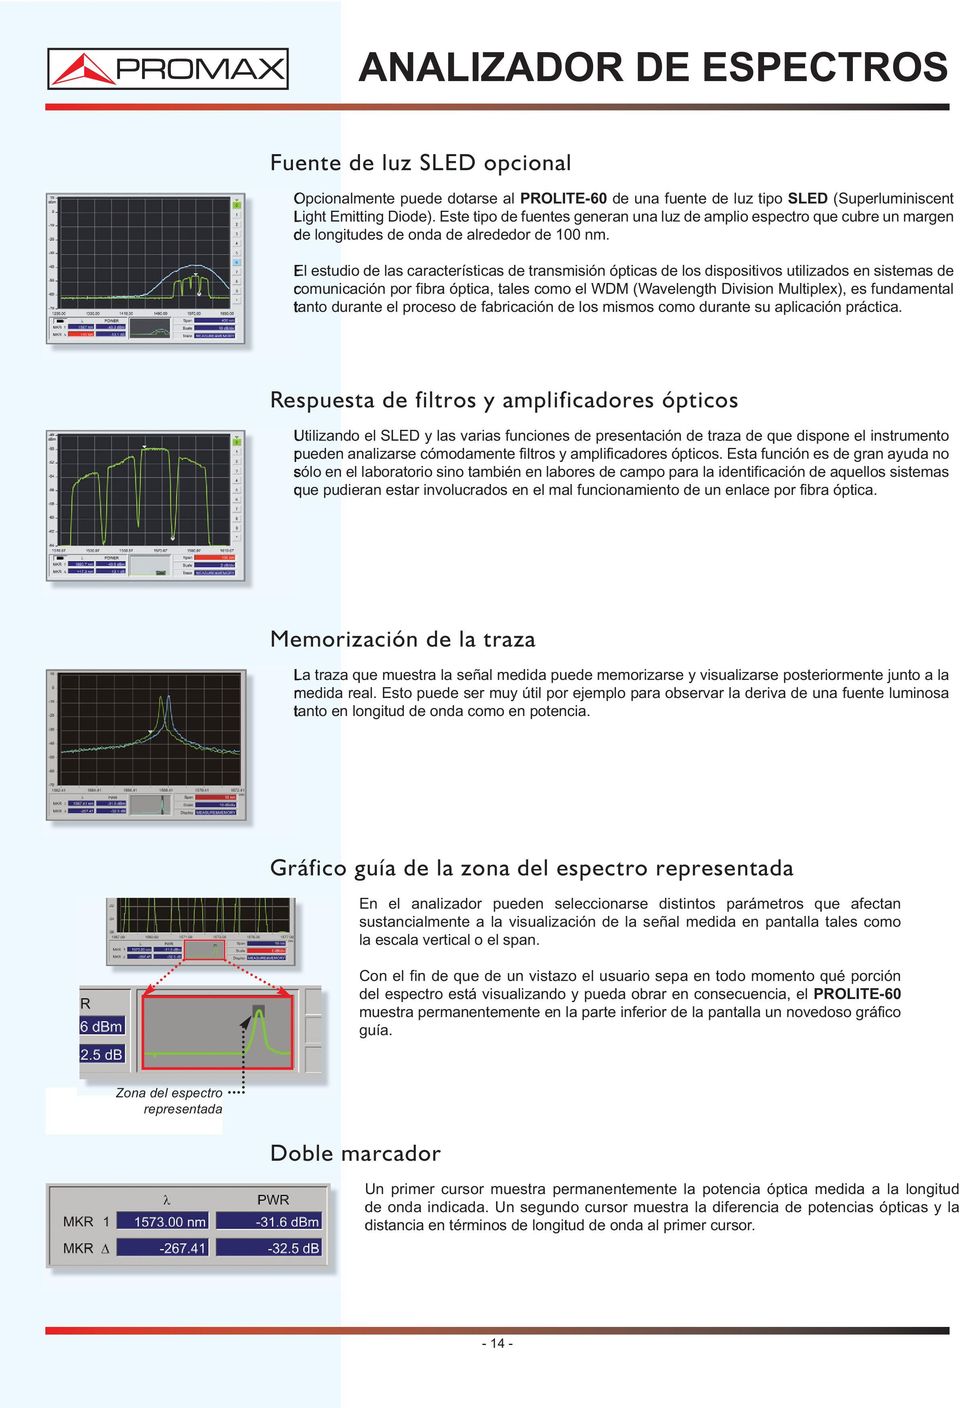 El estudio de las características de transmisión ópticas de los dispositivos utilizados en sistemas de comunicación por fibra óptica, tales como el WDM (Wavelength Division Multiplex), es fundamental